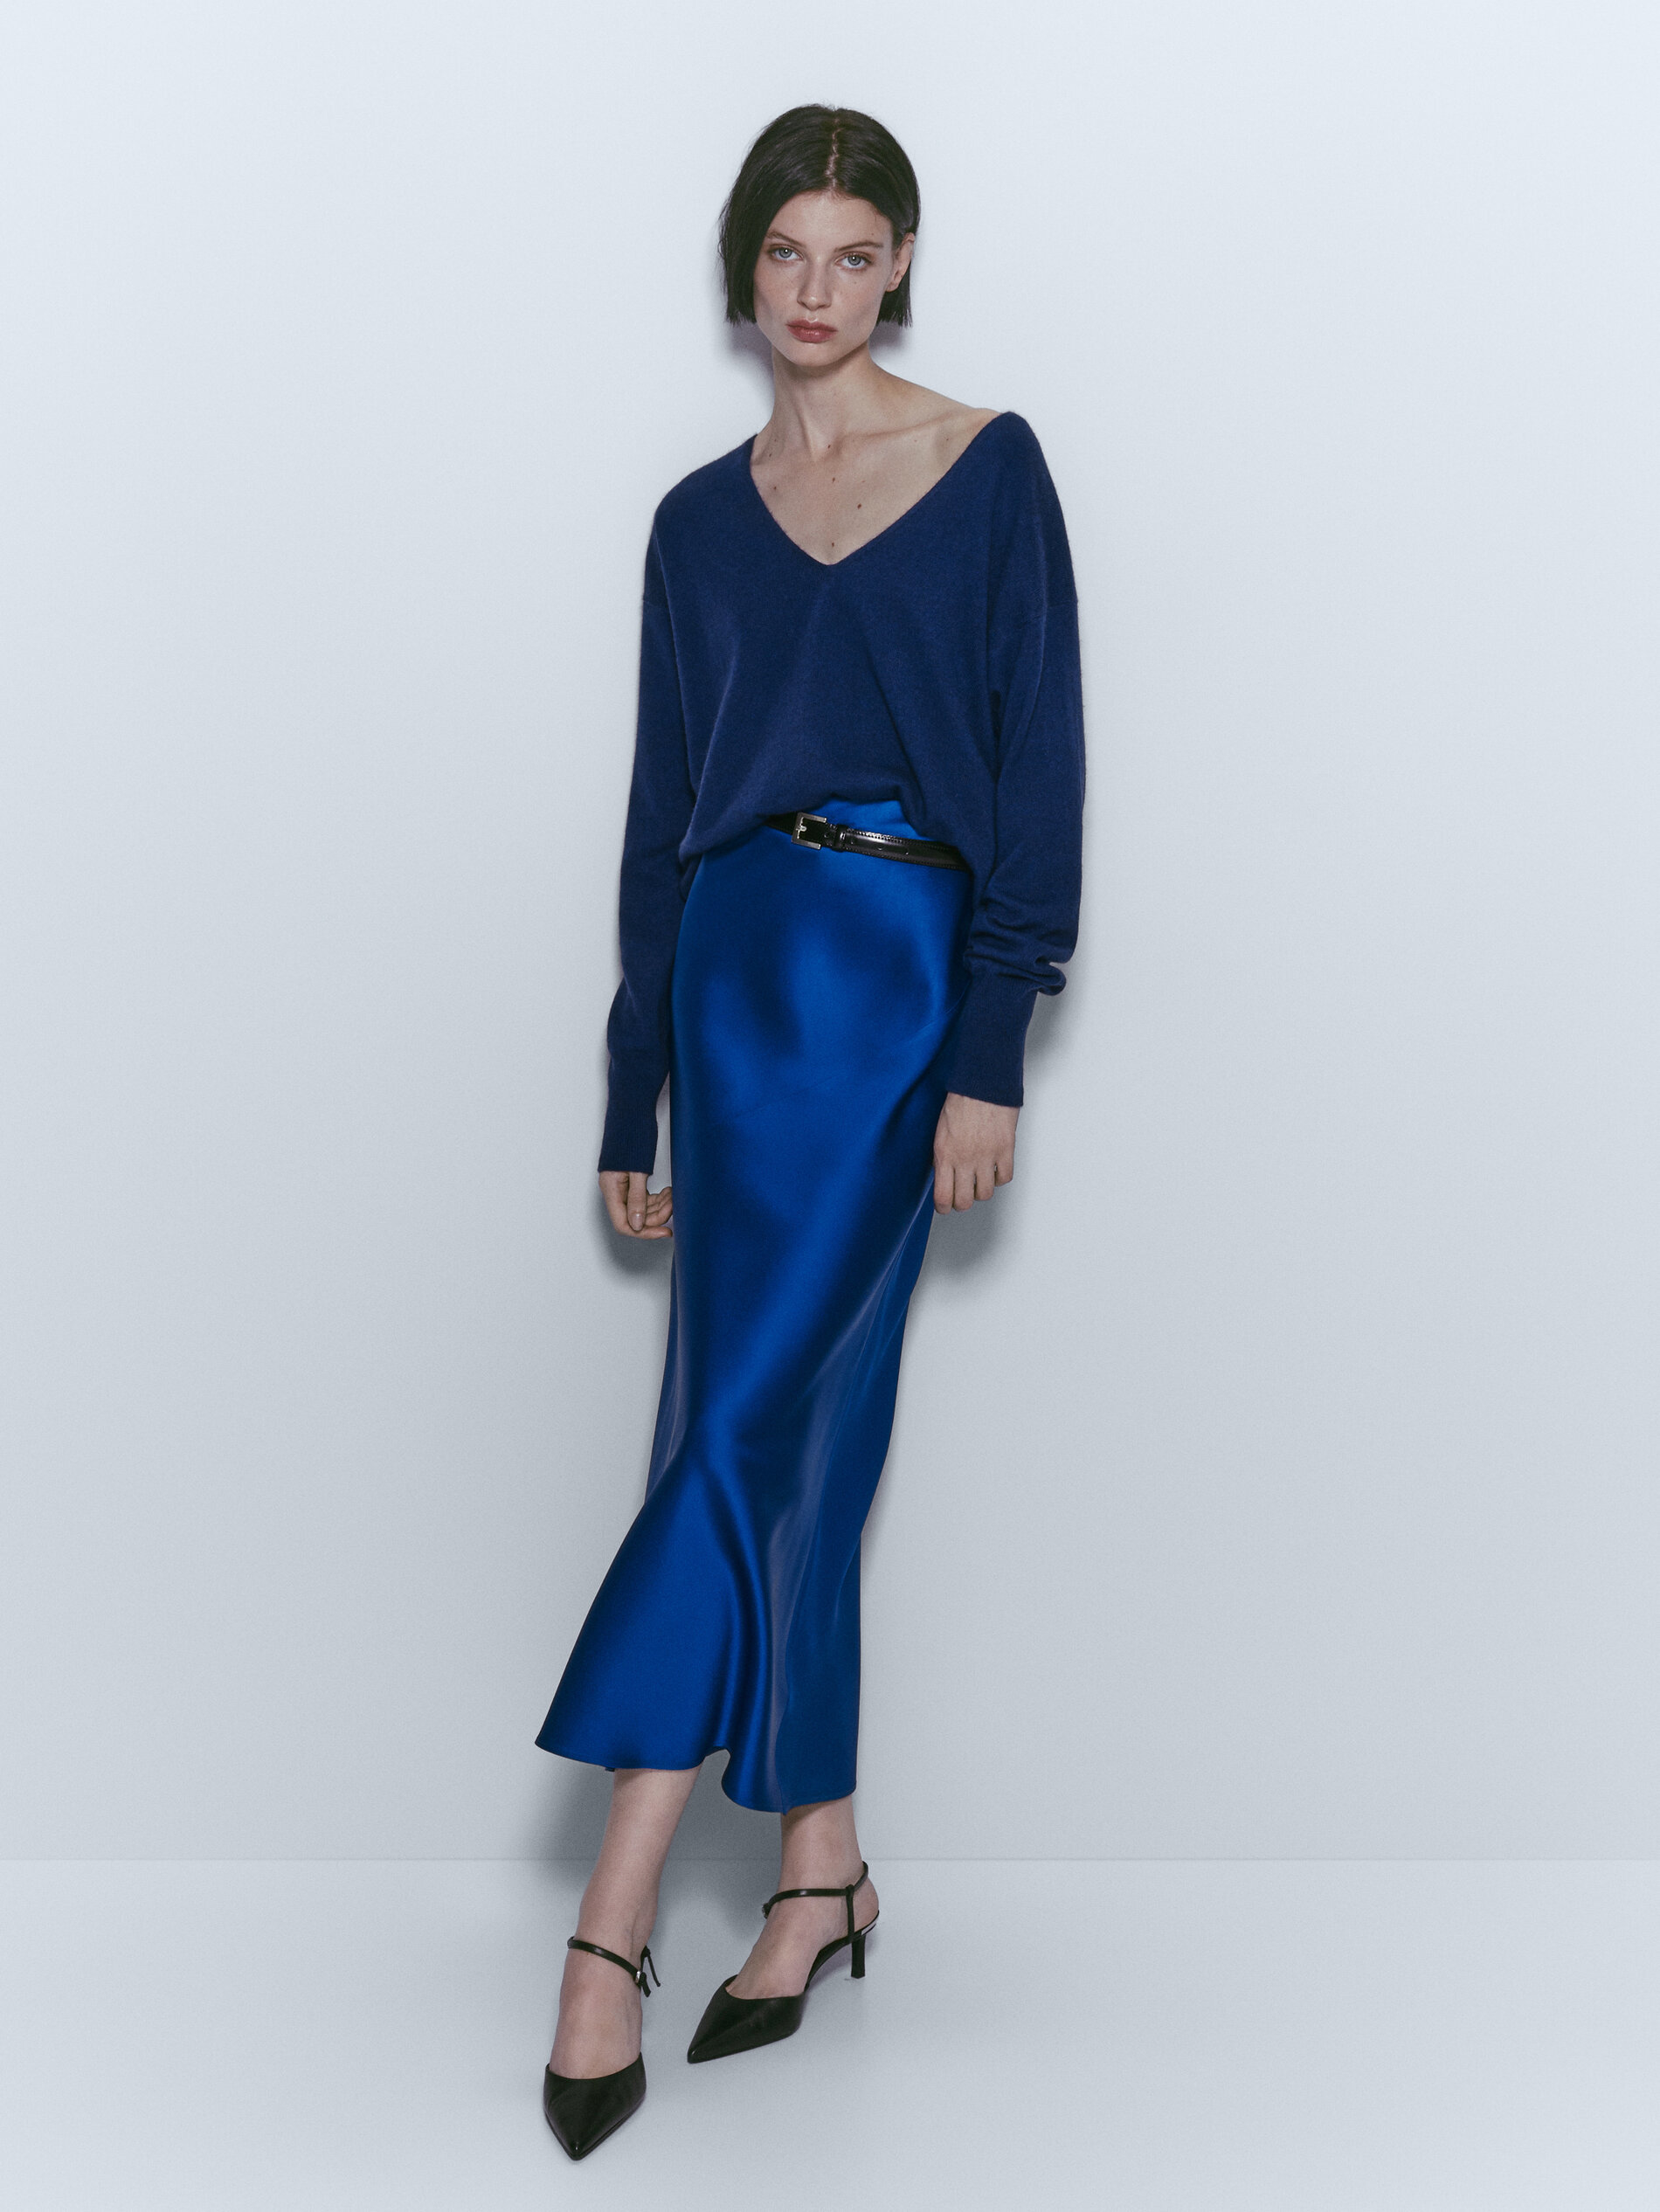 Falda de satén en azul de Massimo Dutti (79,95 euros).